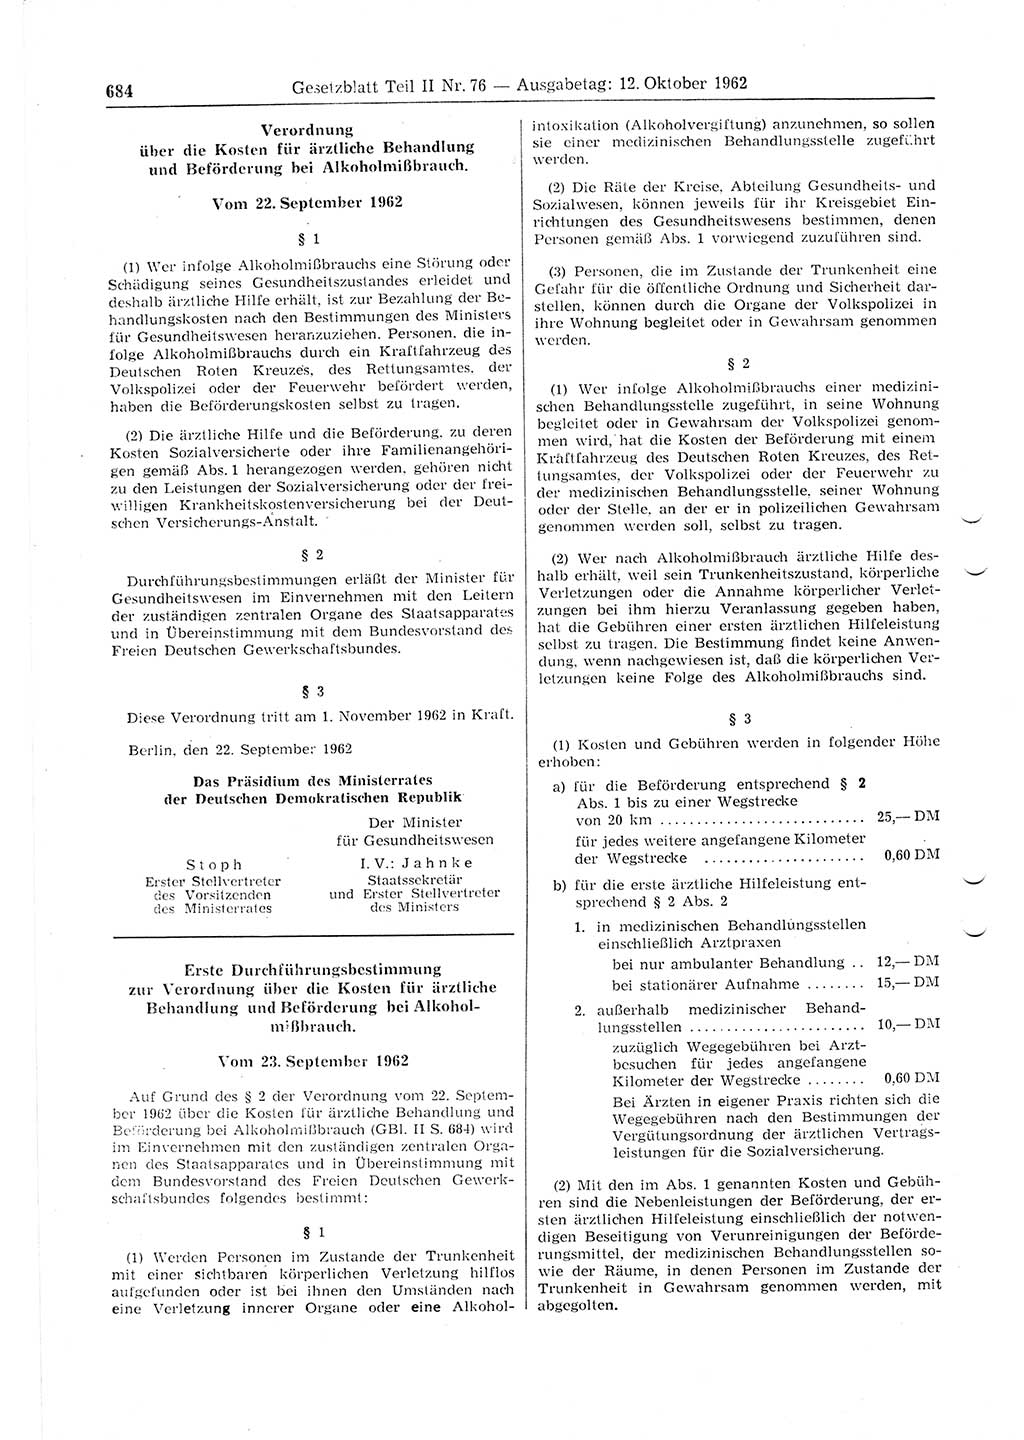 Gesetzblatt (GBl.) der Deutschen Demokratischen Republik (DDR) Teil ⅠⅠ 1962, Seite 684 (GBl. DDR ⅠⅠ 1962, S. 684)